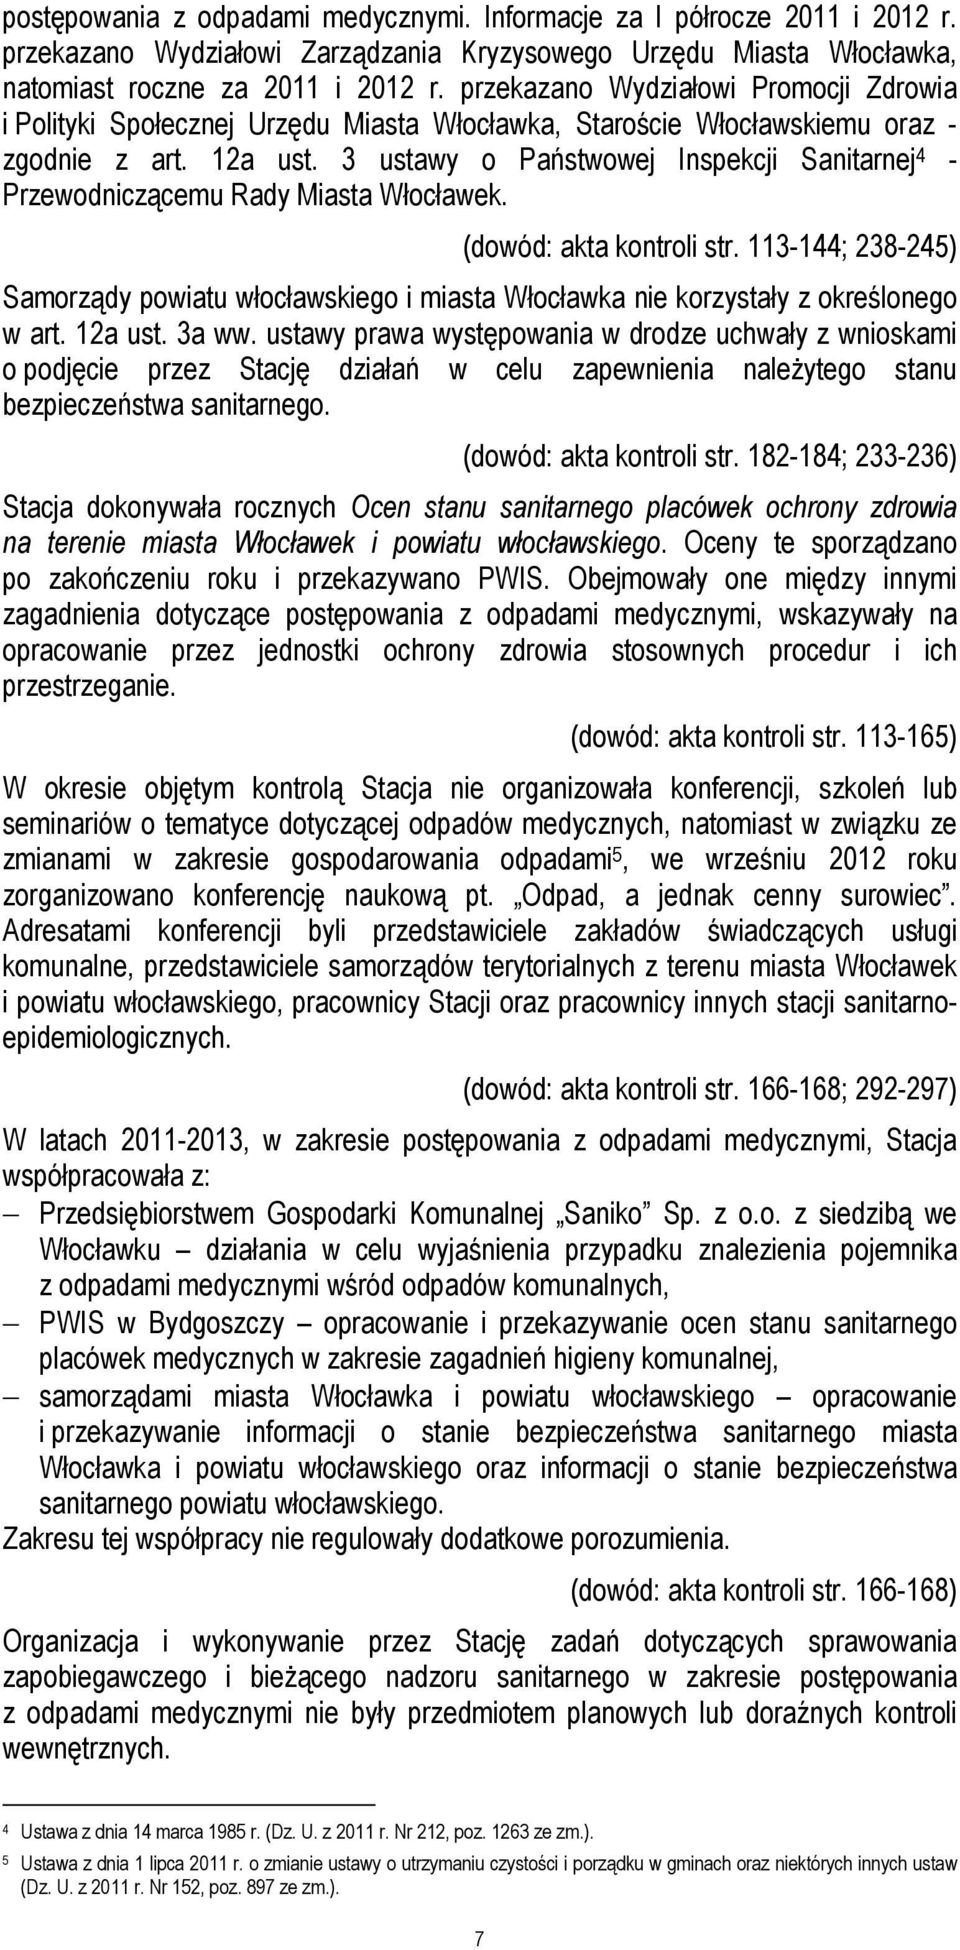 3 ustawy o Państwowej Inspekcji Sanitarnej 4 - Przewodniczącemu Rady Miasta Włocławek. (dowód: akta kontroli str.